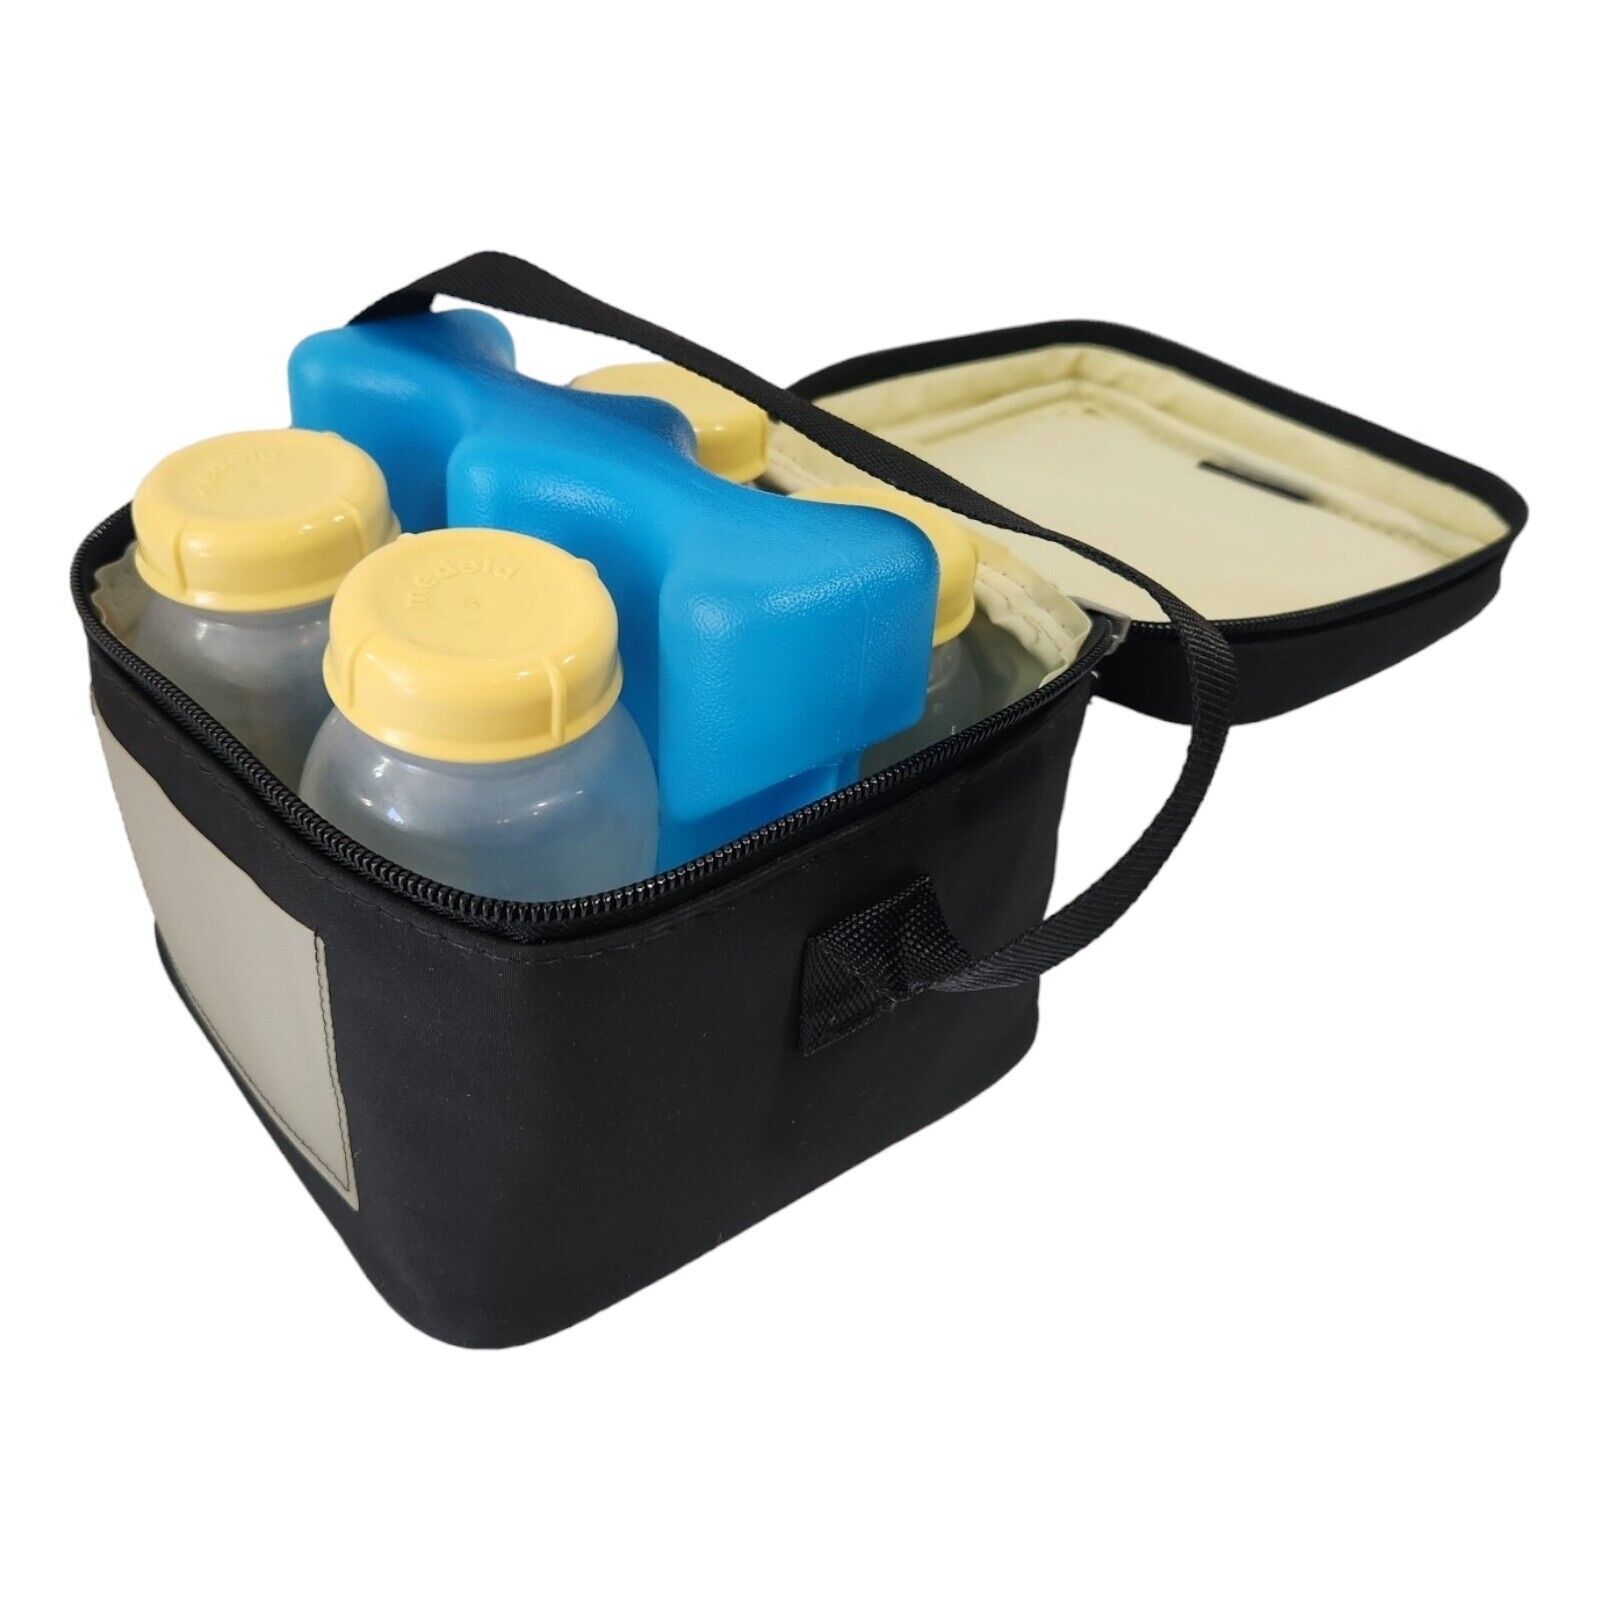 24qt Medela Breast Milk Cooler Set with Bottles & Lids, Cooler and Ice Pack - $29.69